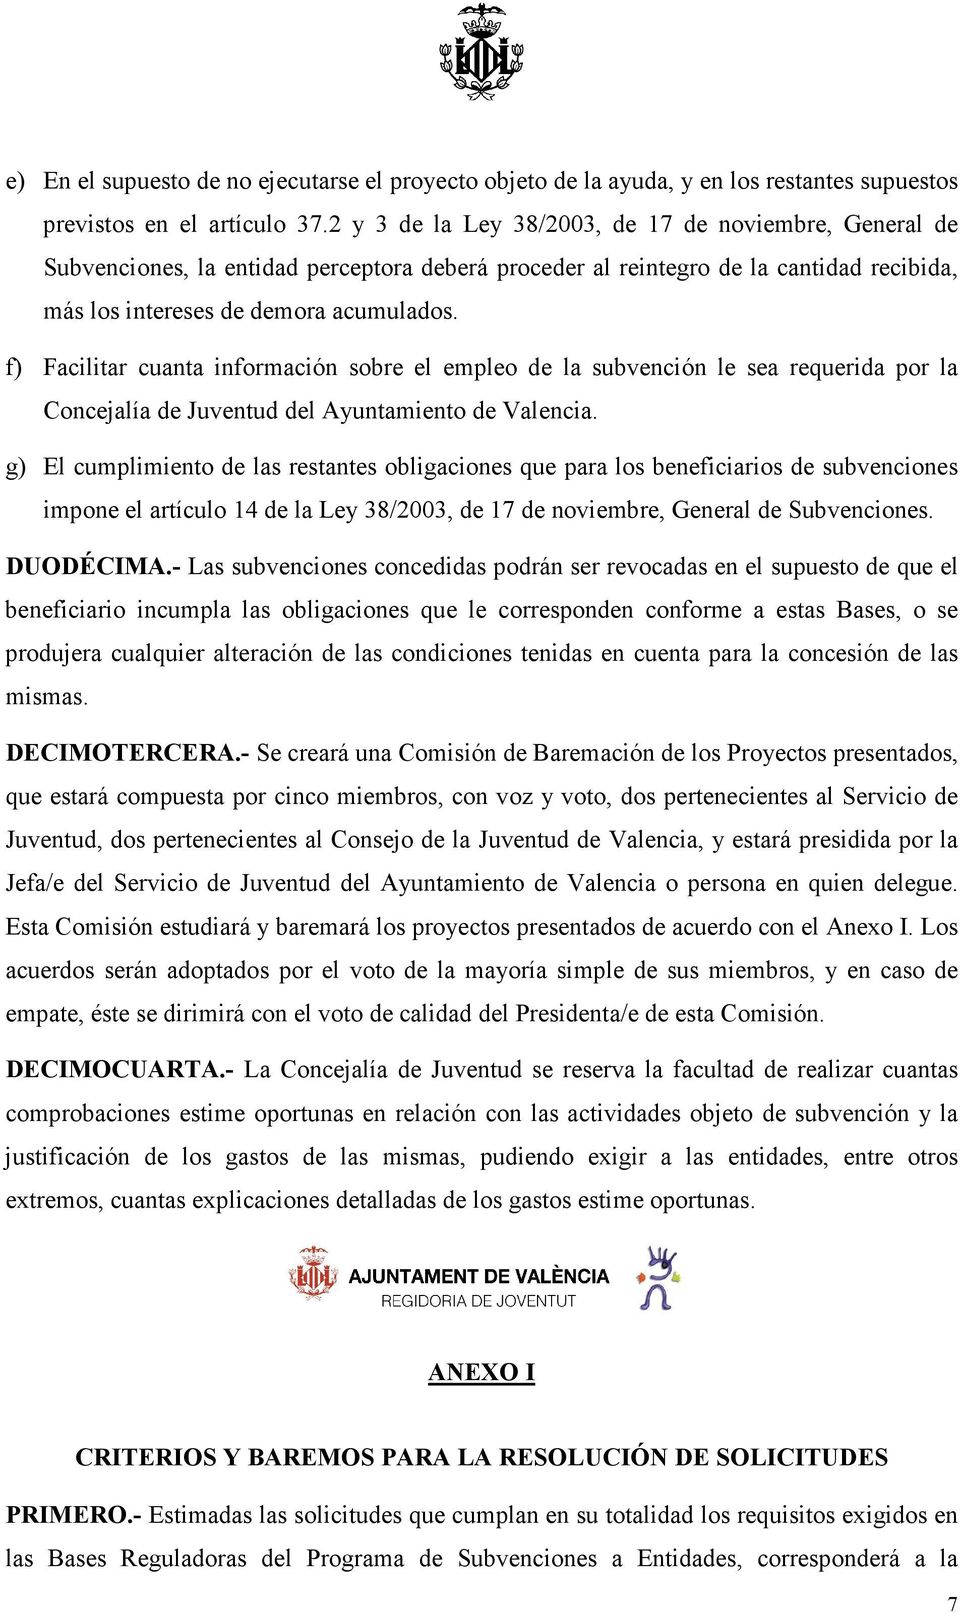 f) Facilitar cuanta información sobre el empleo de la subvención le sea requerida por la Concejalía de Juventud del Ayuntamiento de Valencia.